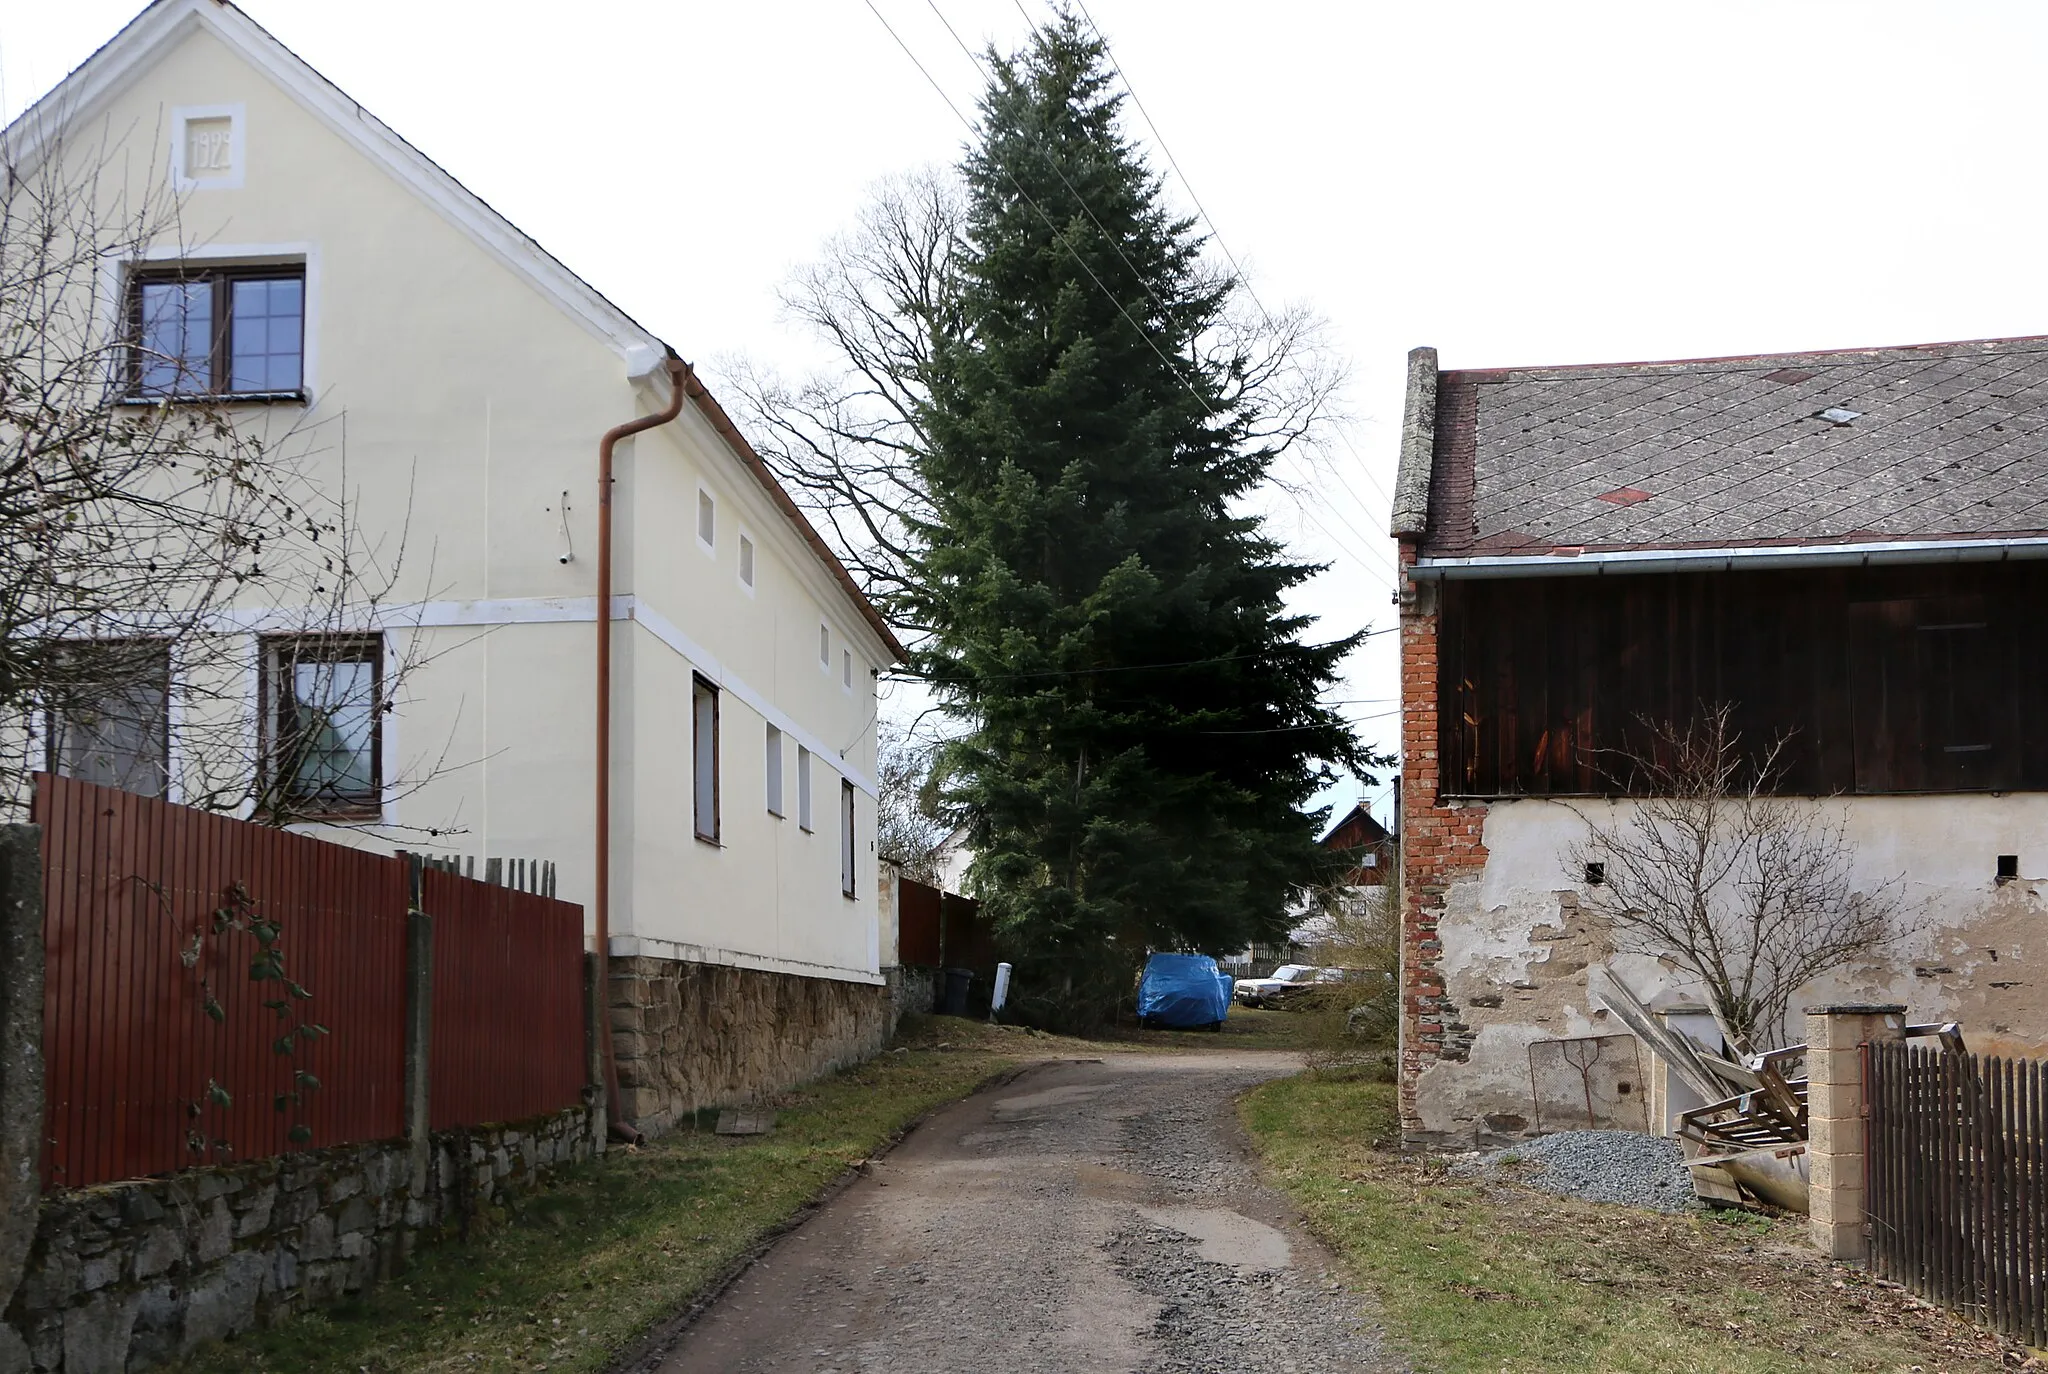 Photo showing: House No 3 in Něšov, part of Pernarec, Czech Republic.